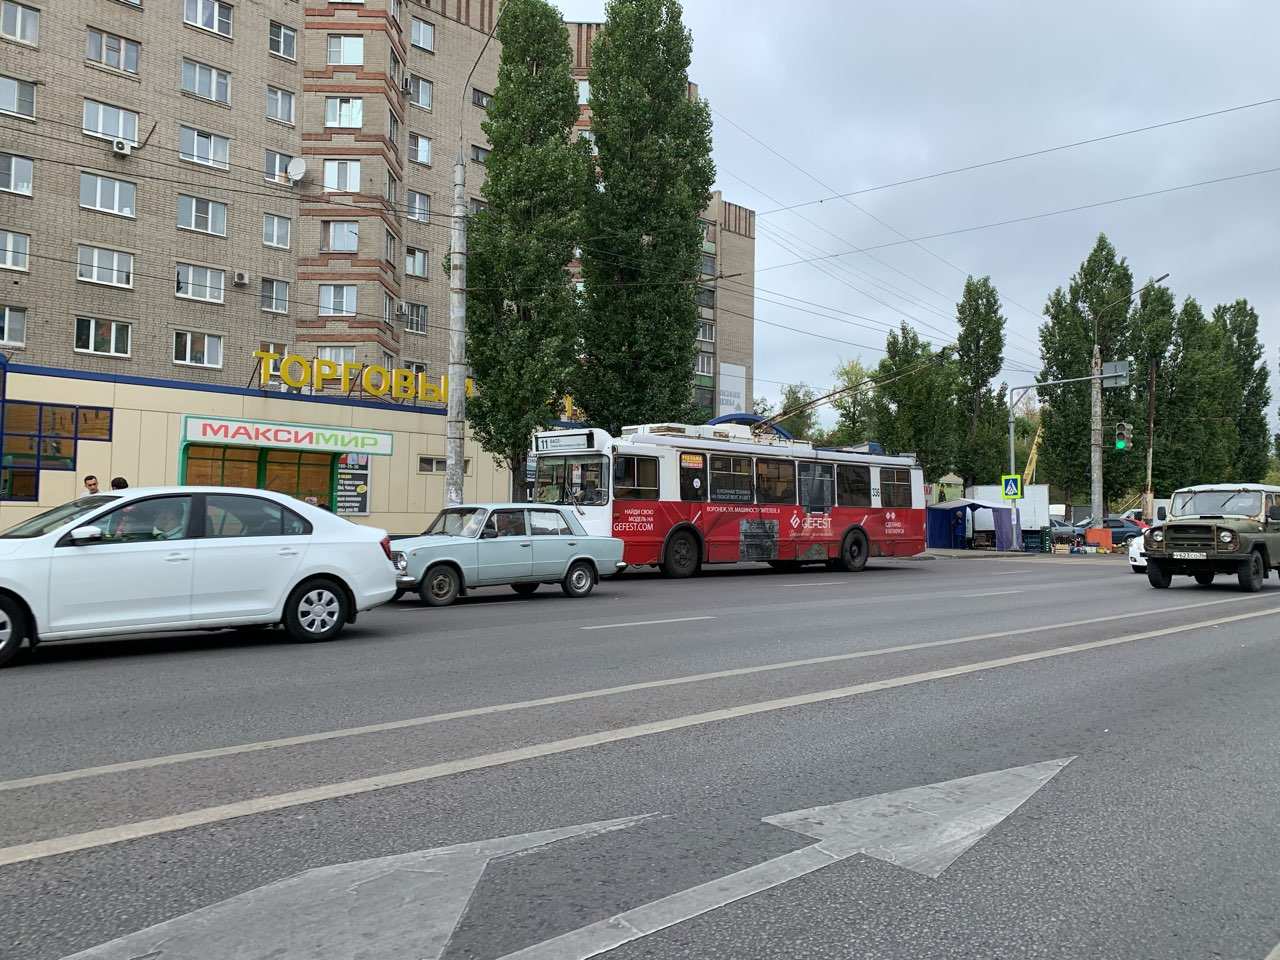 Маршруты четырех троллейбусов изменятся в Нижнем Новгороде до 10 июля - фото 1